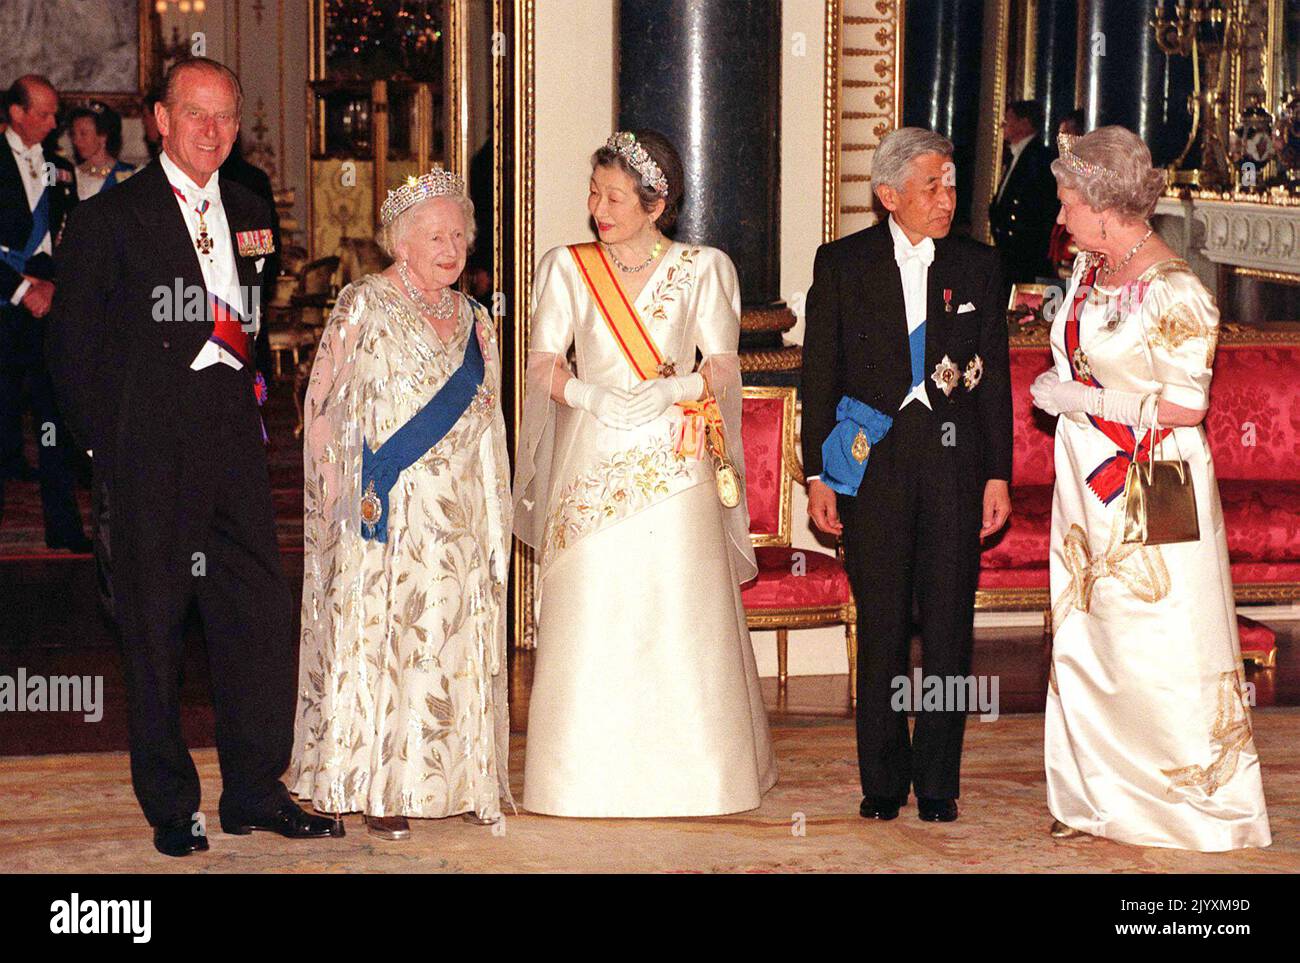 Foto de archivo fechada el 26/5/1998 de la Reina Isabel II (derecha) y el emperador japonés Akihito (segunda derecha), su esposa la Emperatriz Michiko (centro), el Duque de Edimburgo (izquierda) y la Reina Isabel, la Reina Madre haciendo una pausa para los fotógrafos cuando llegan al Salón de Banquetes del Estado en el Palacio de Buckingham. La relación de la Reina con su madre ayudó a modelar la monarquía, y mientras devastada por su muerte, los amigos reconocieron que en los años que siguieron la Reina 'entró en su propia'. Fecha de emisión: Jueves 8 de septiembre de 2022. Foto de stock